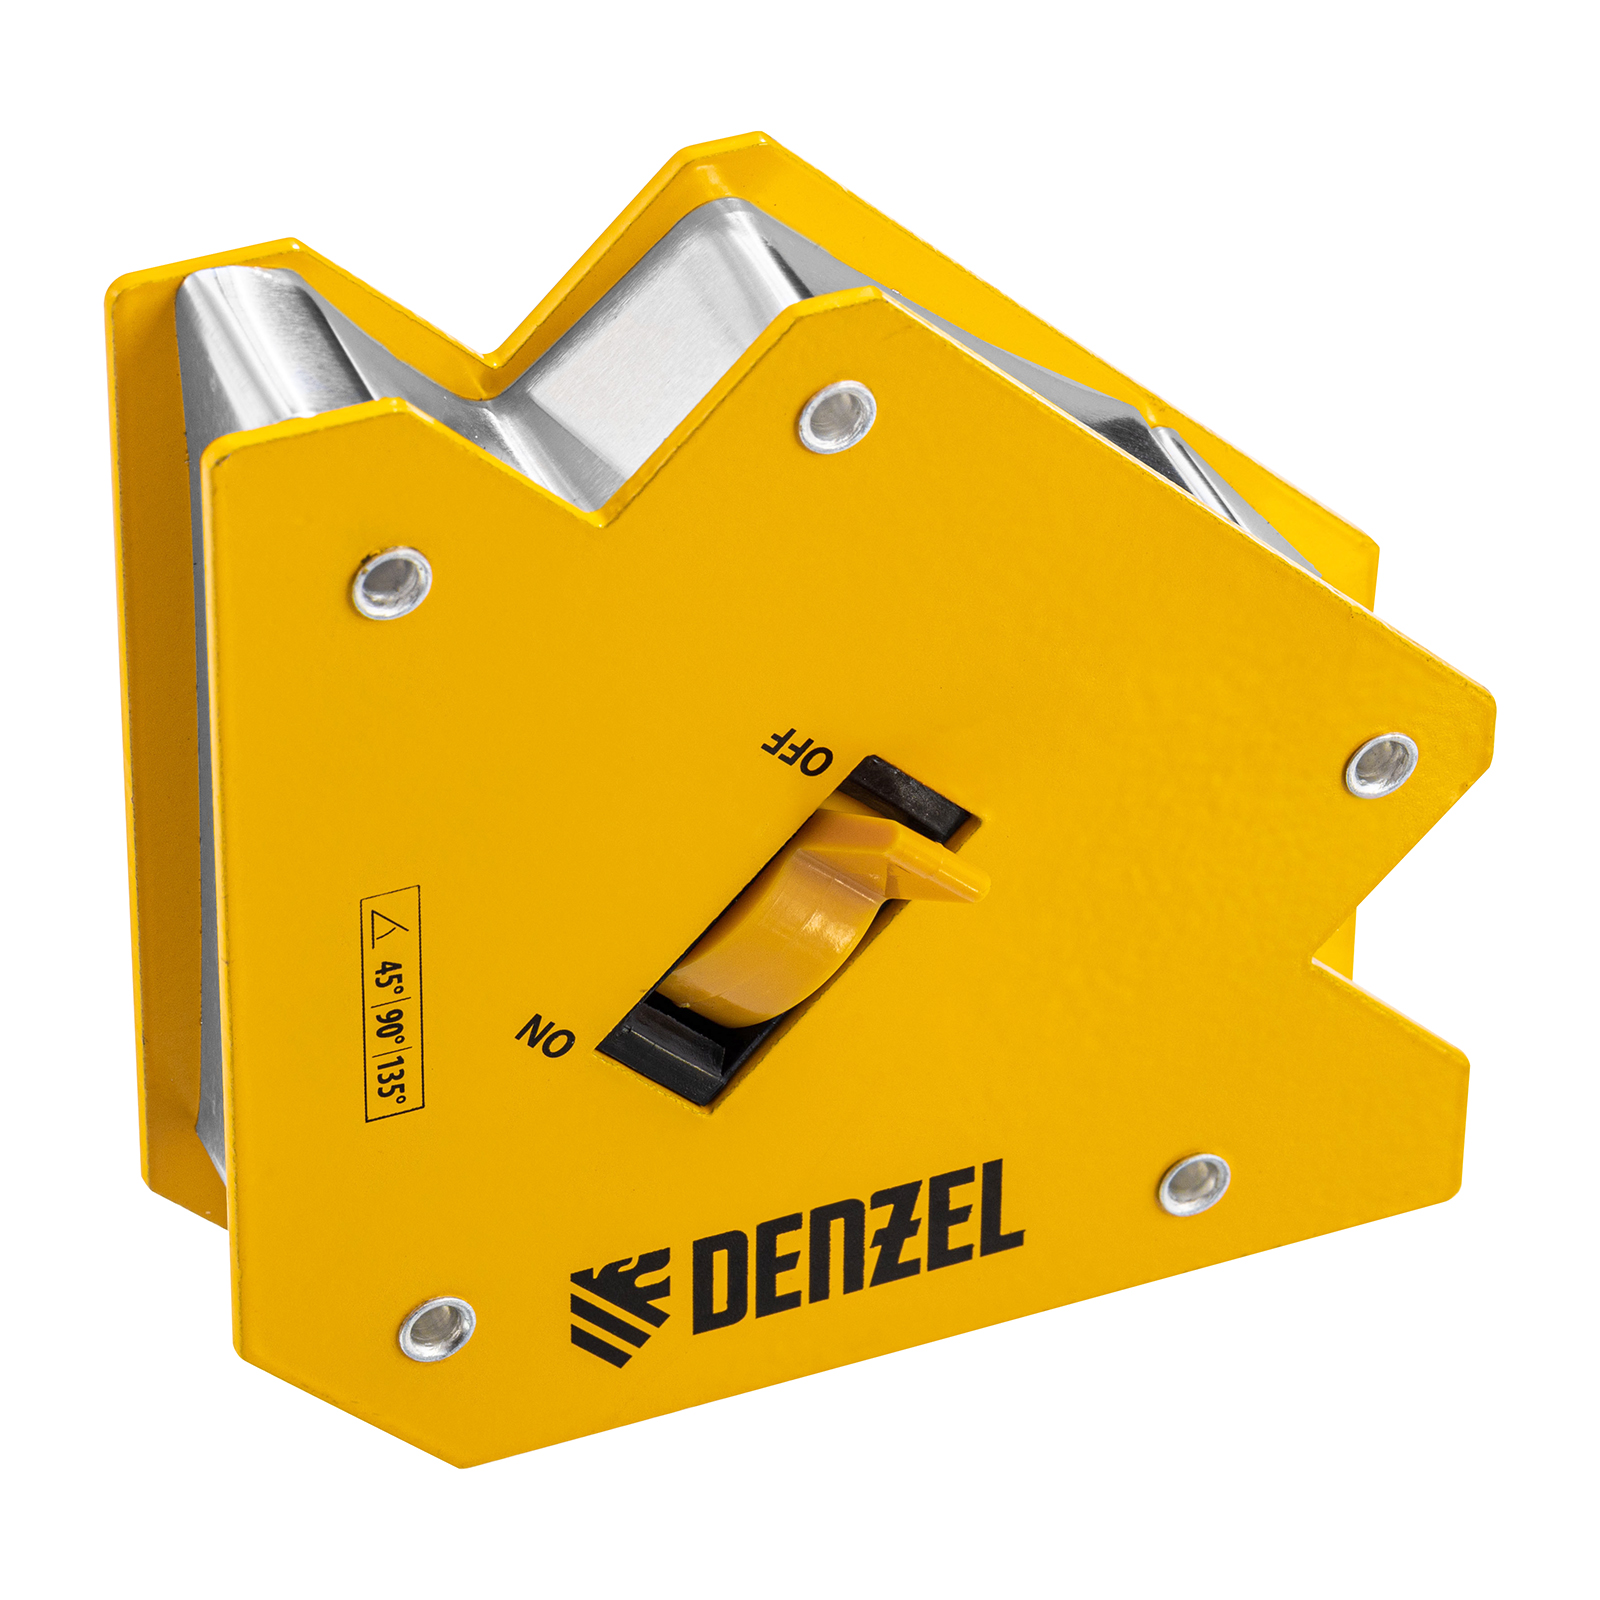 Фиксатор магнитный отключаемый для сварочных работ DENZEL усилие 30 LB, 45х90х135 гр 97563 магнитный фиксатор асанта